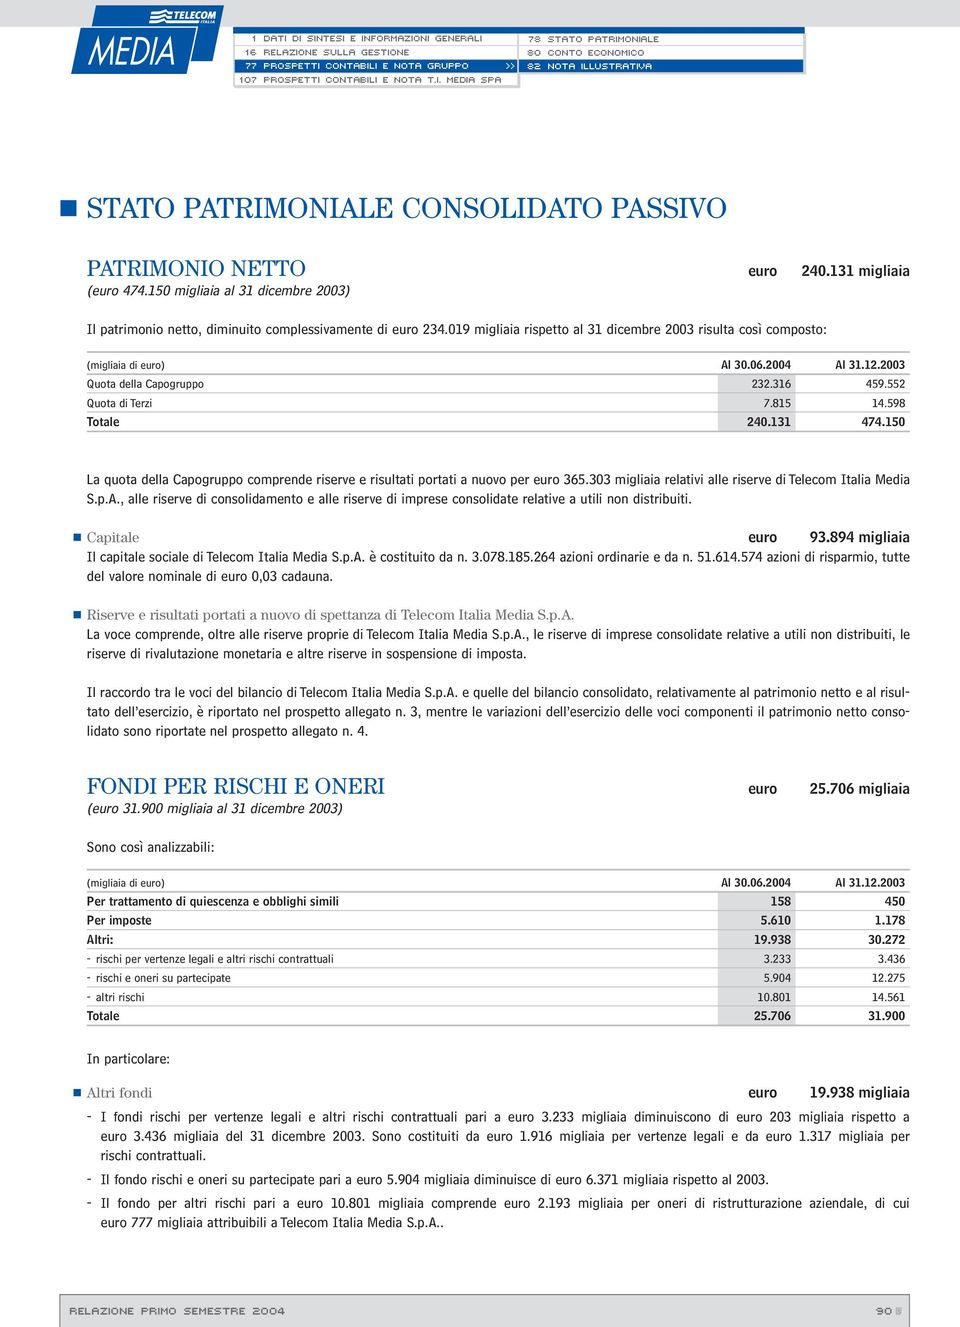 150 La quota della Capogruppo comprende riserve e risultati portati a nuovo per euro 365.303 migliaia relativi alle riserve di Telecom Italia Media S.p.A.